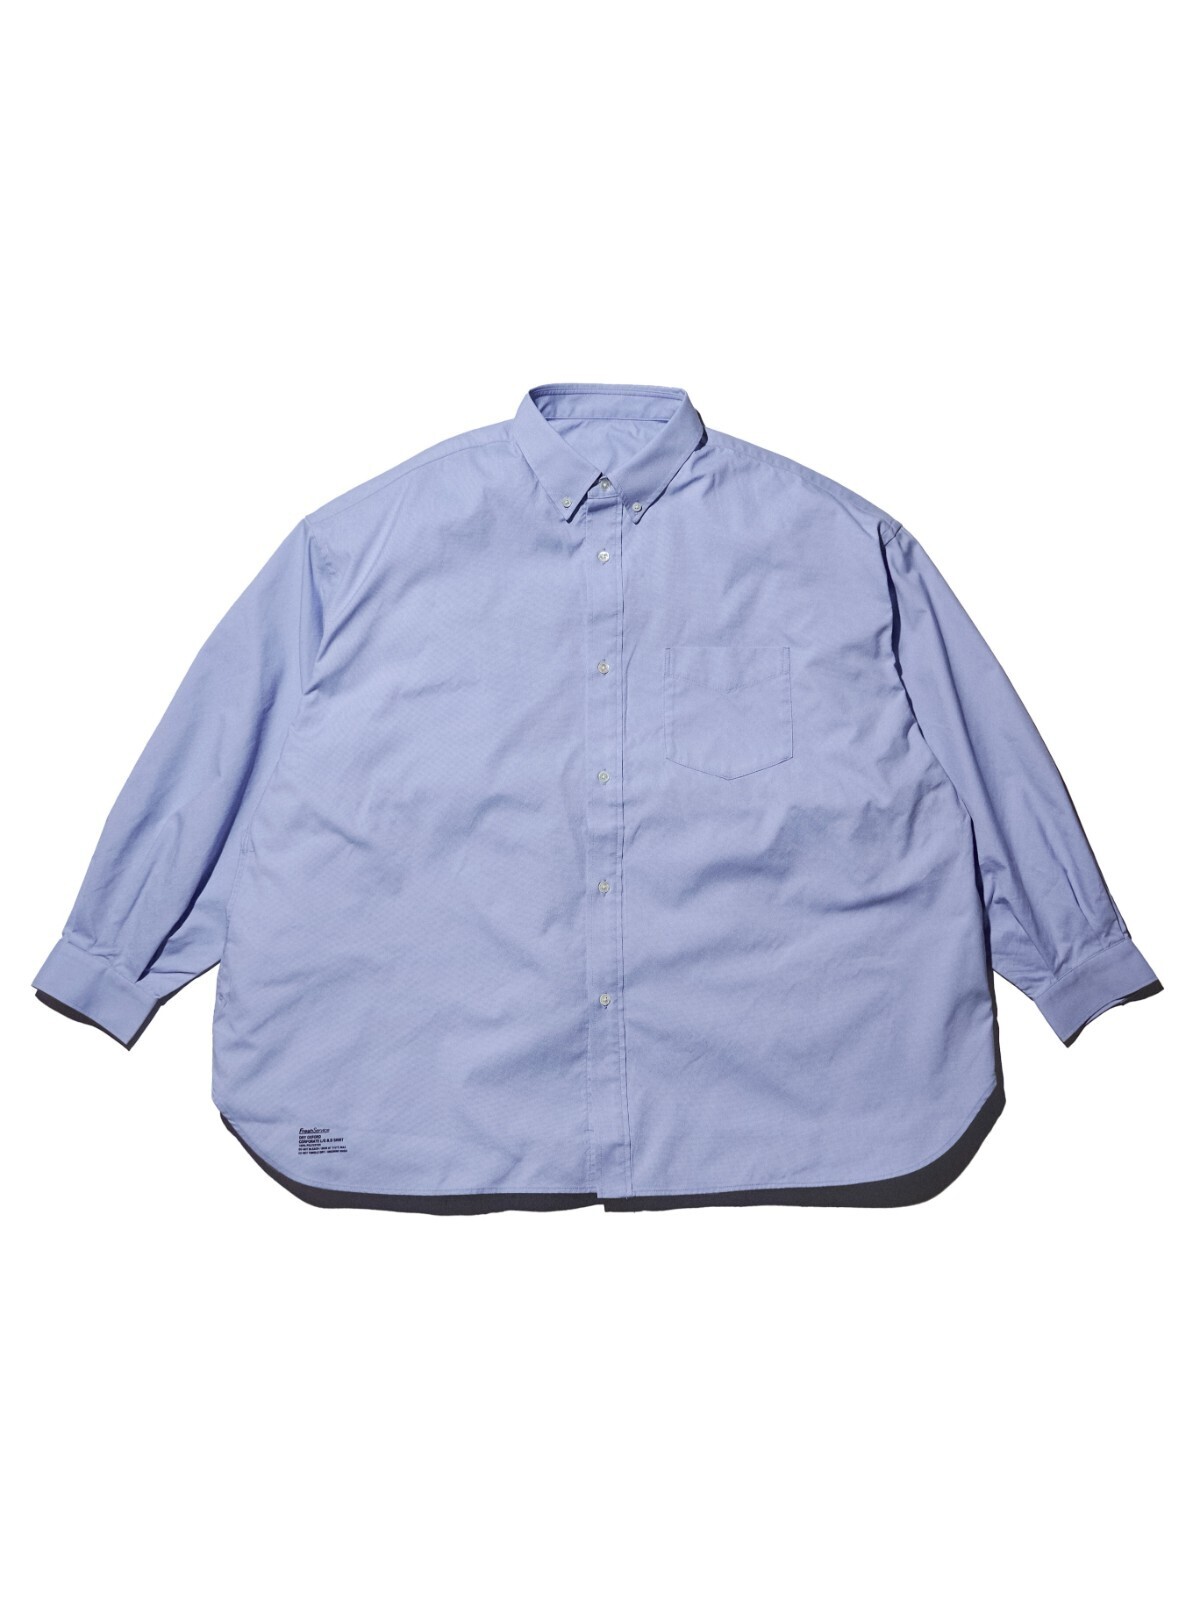 フレッシュサービス メンズ ドライオックスフォード コーポレートボタンダウンシャツ(長袖) 写真7